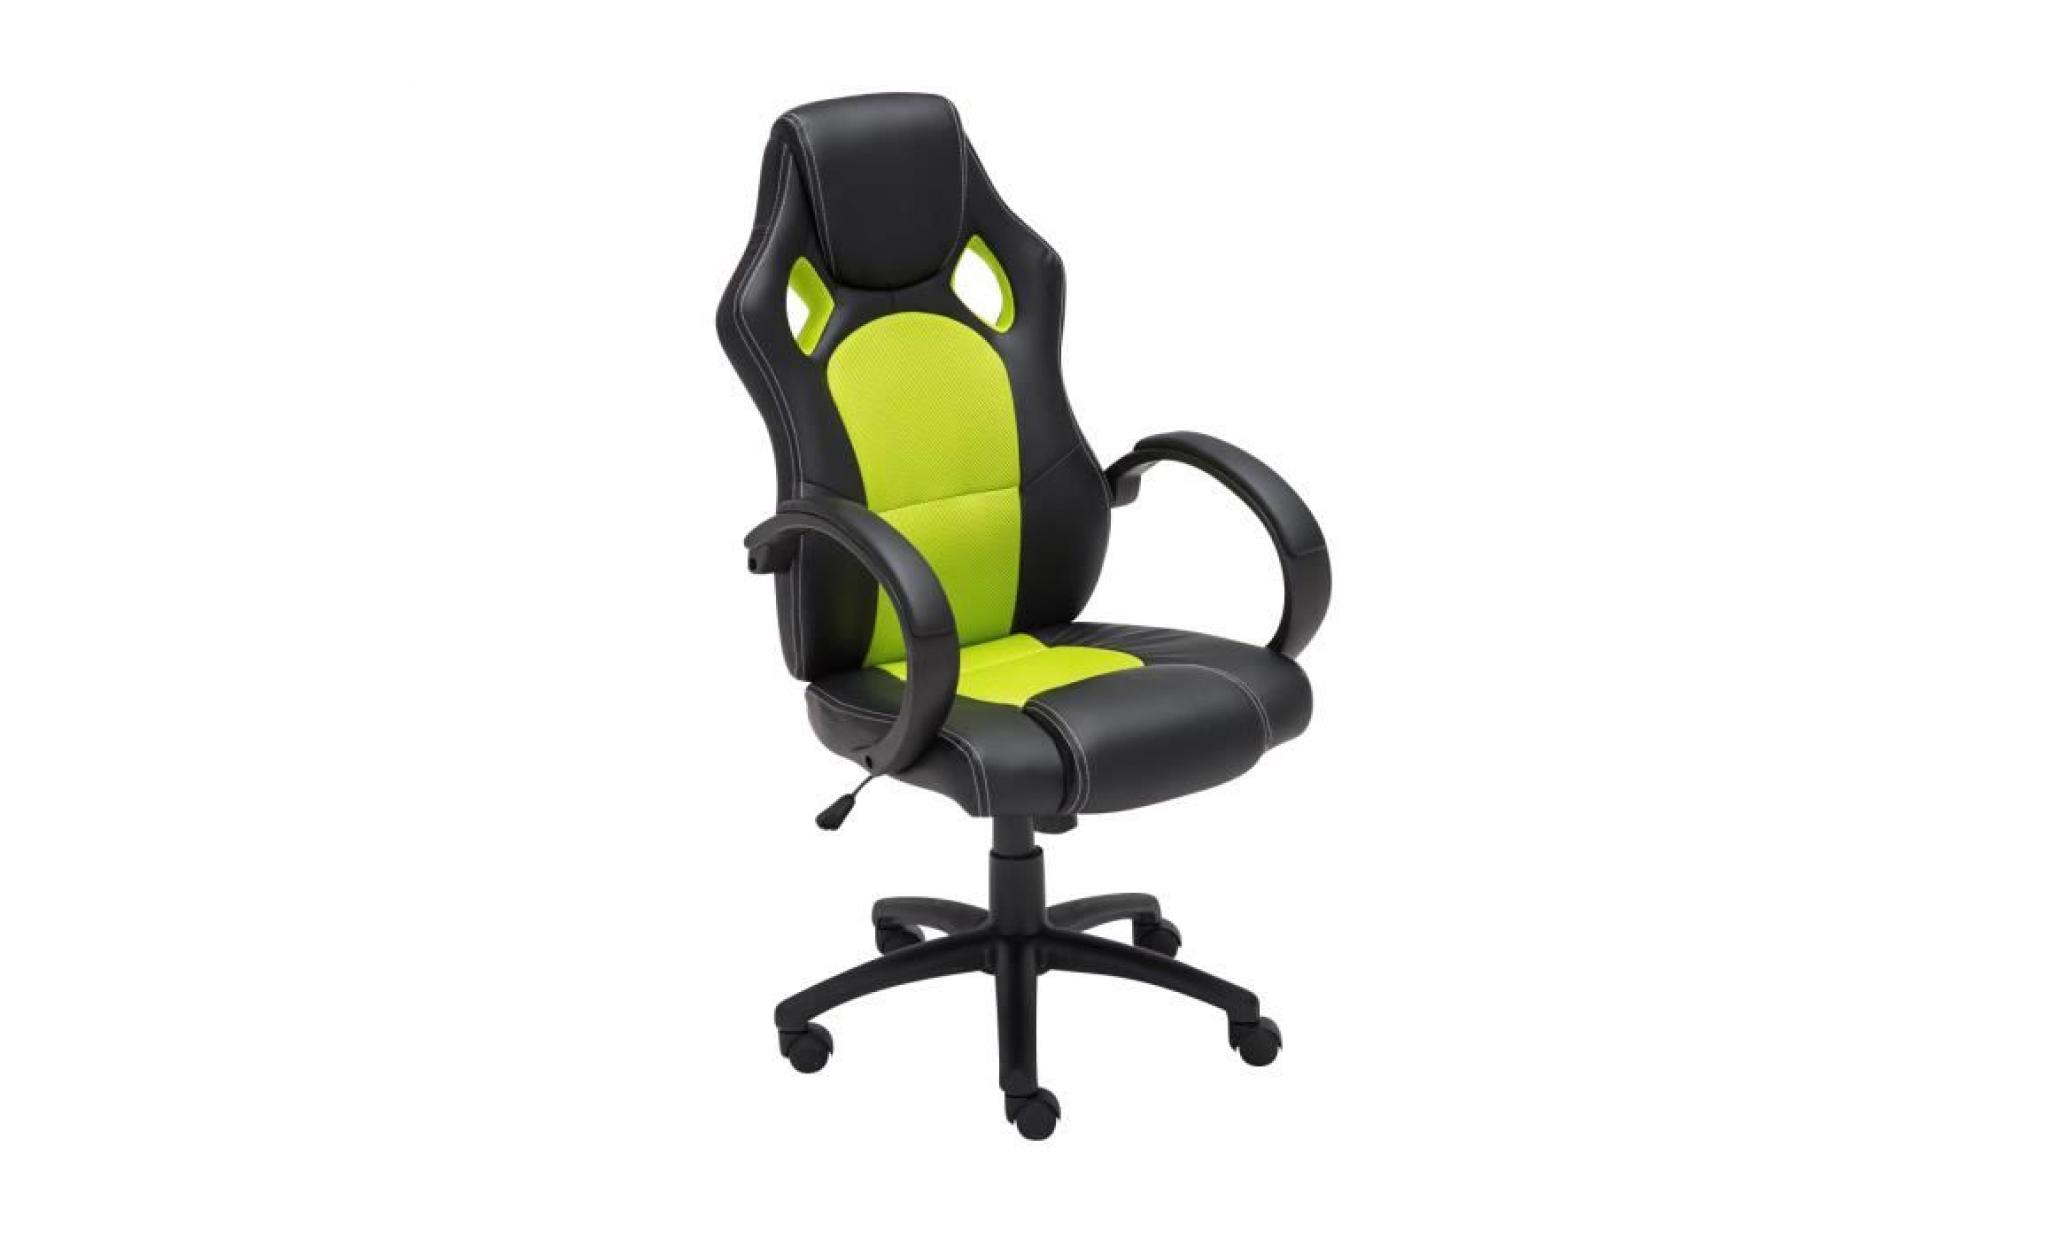 clp fauteuil de bureau fire, chaise bureau ajustable en hauteur de luxe, revêtement en pu, 7 couleurs au choix 110 cm jaune pas cher